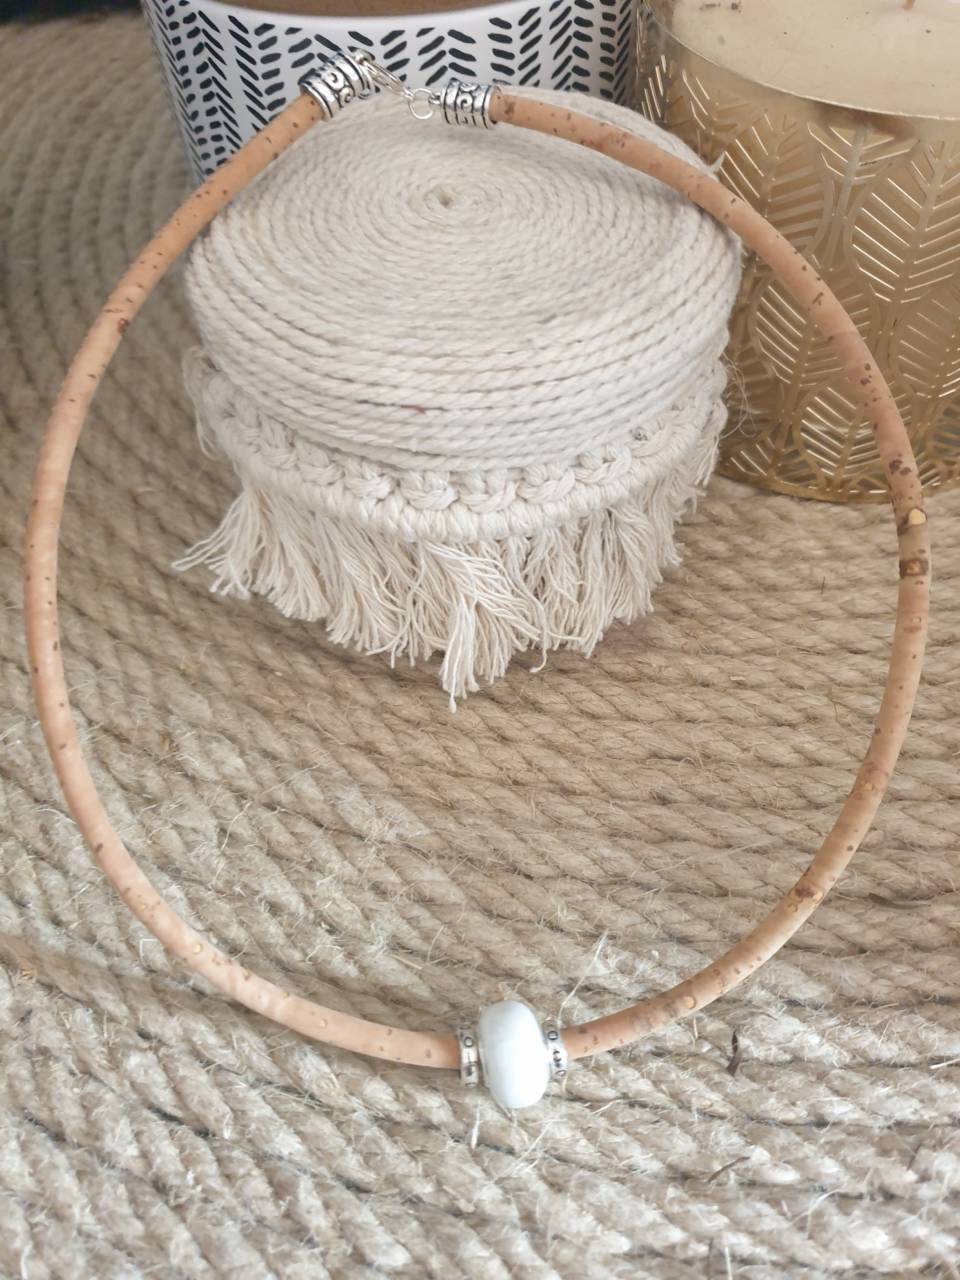 Création de collier en liège avec perle de verre céramique blanche, une tendance au naturelle et dans l'ère du temps